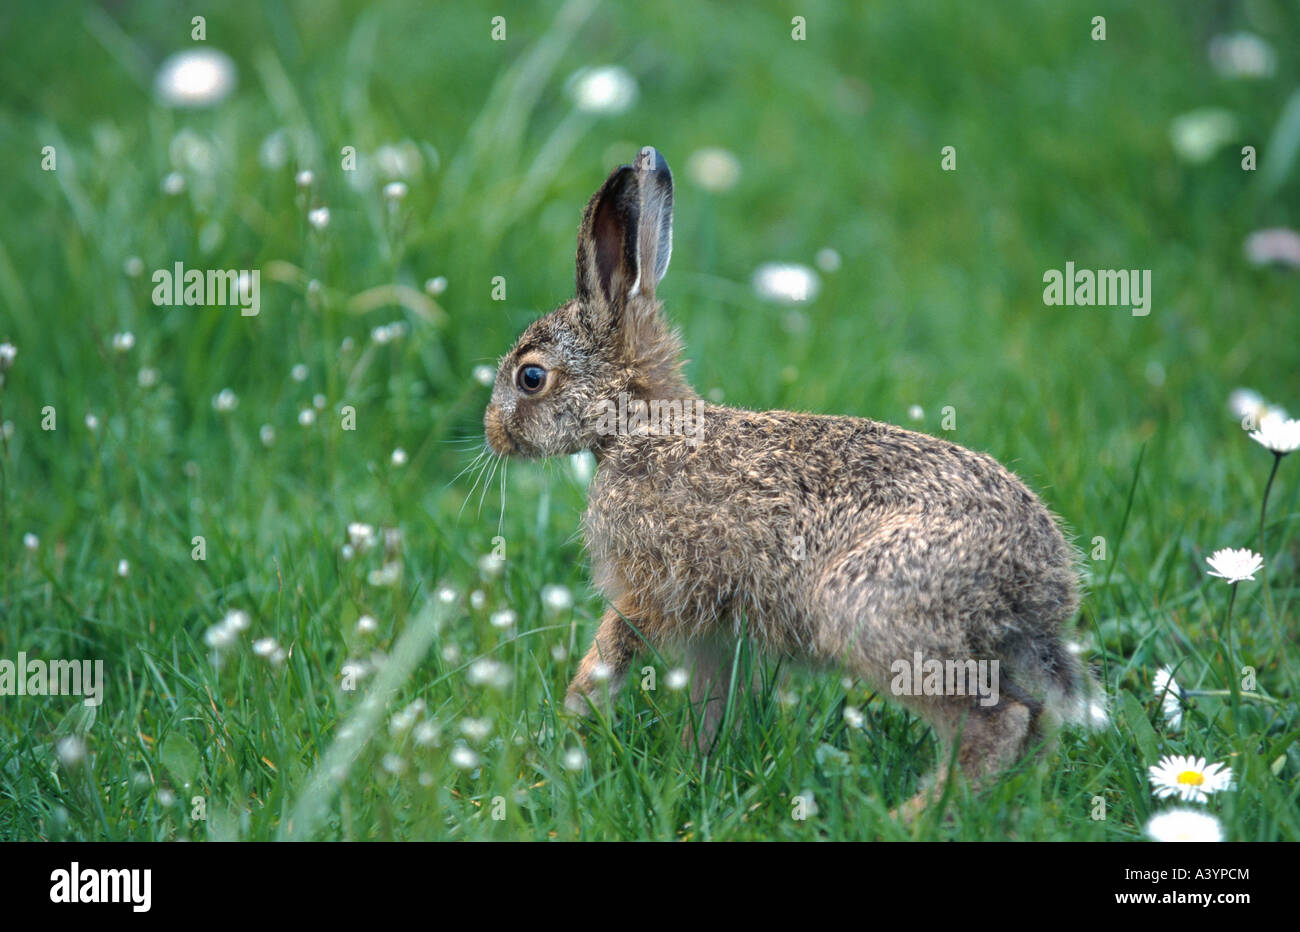 European hare (Lepus europaeus), juvenile Stock Photo